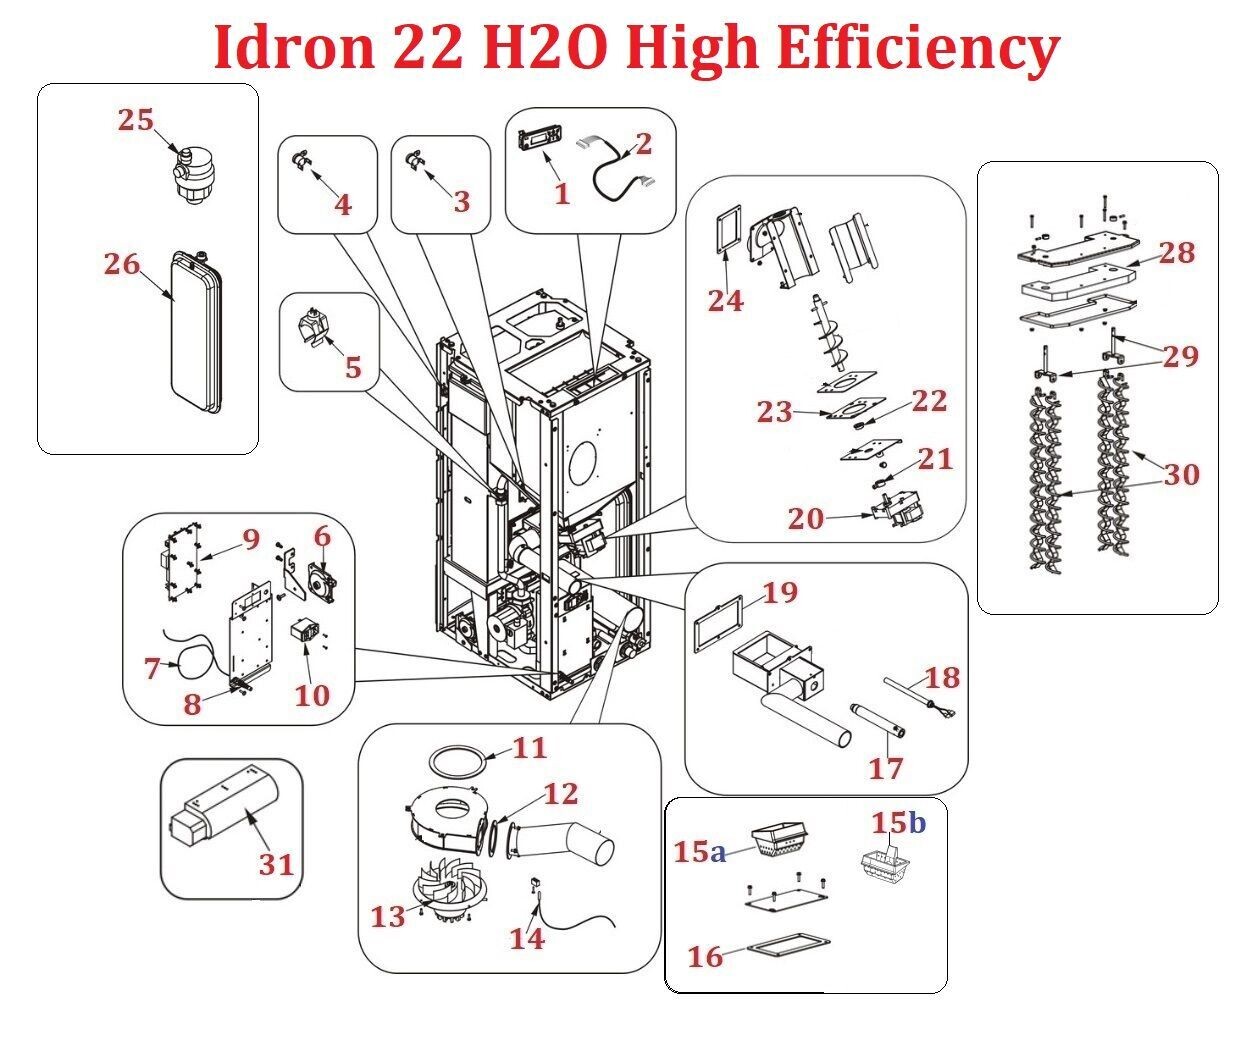 Idron 22 H2O High Efficiency